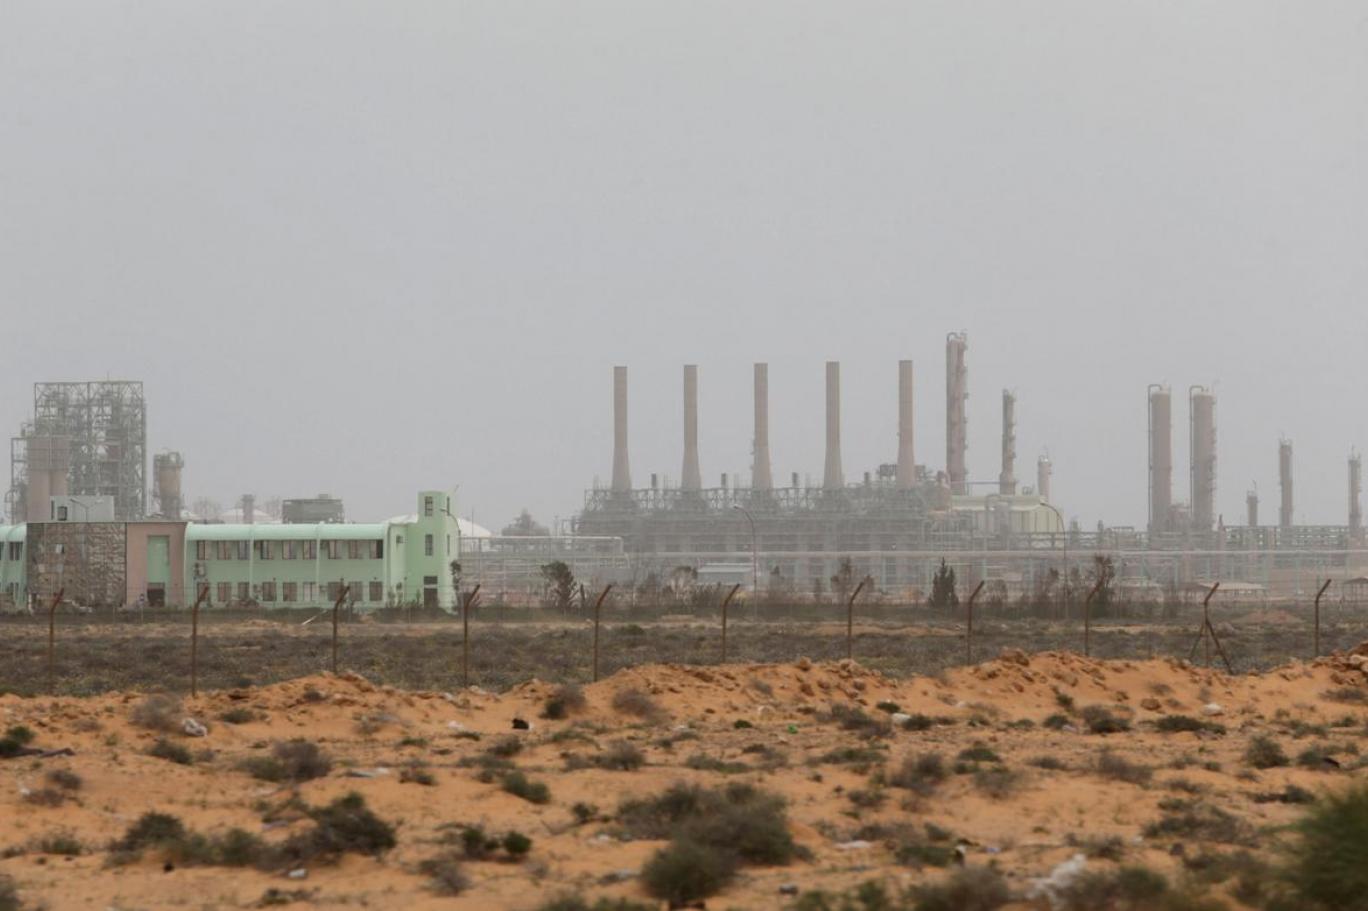 دور النفط بالصراع الدولي في ليبيا